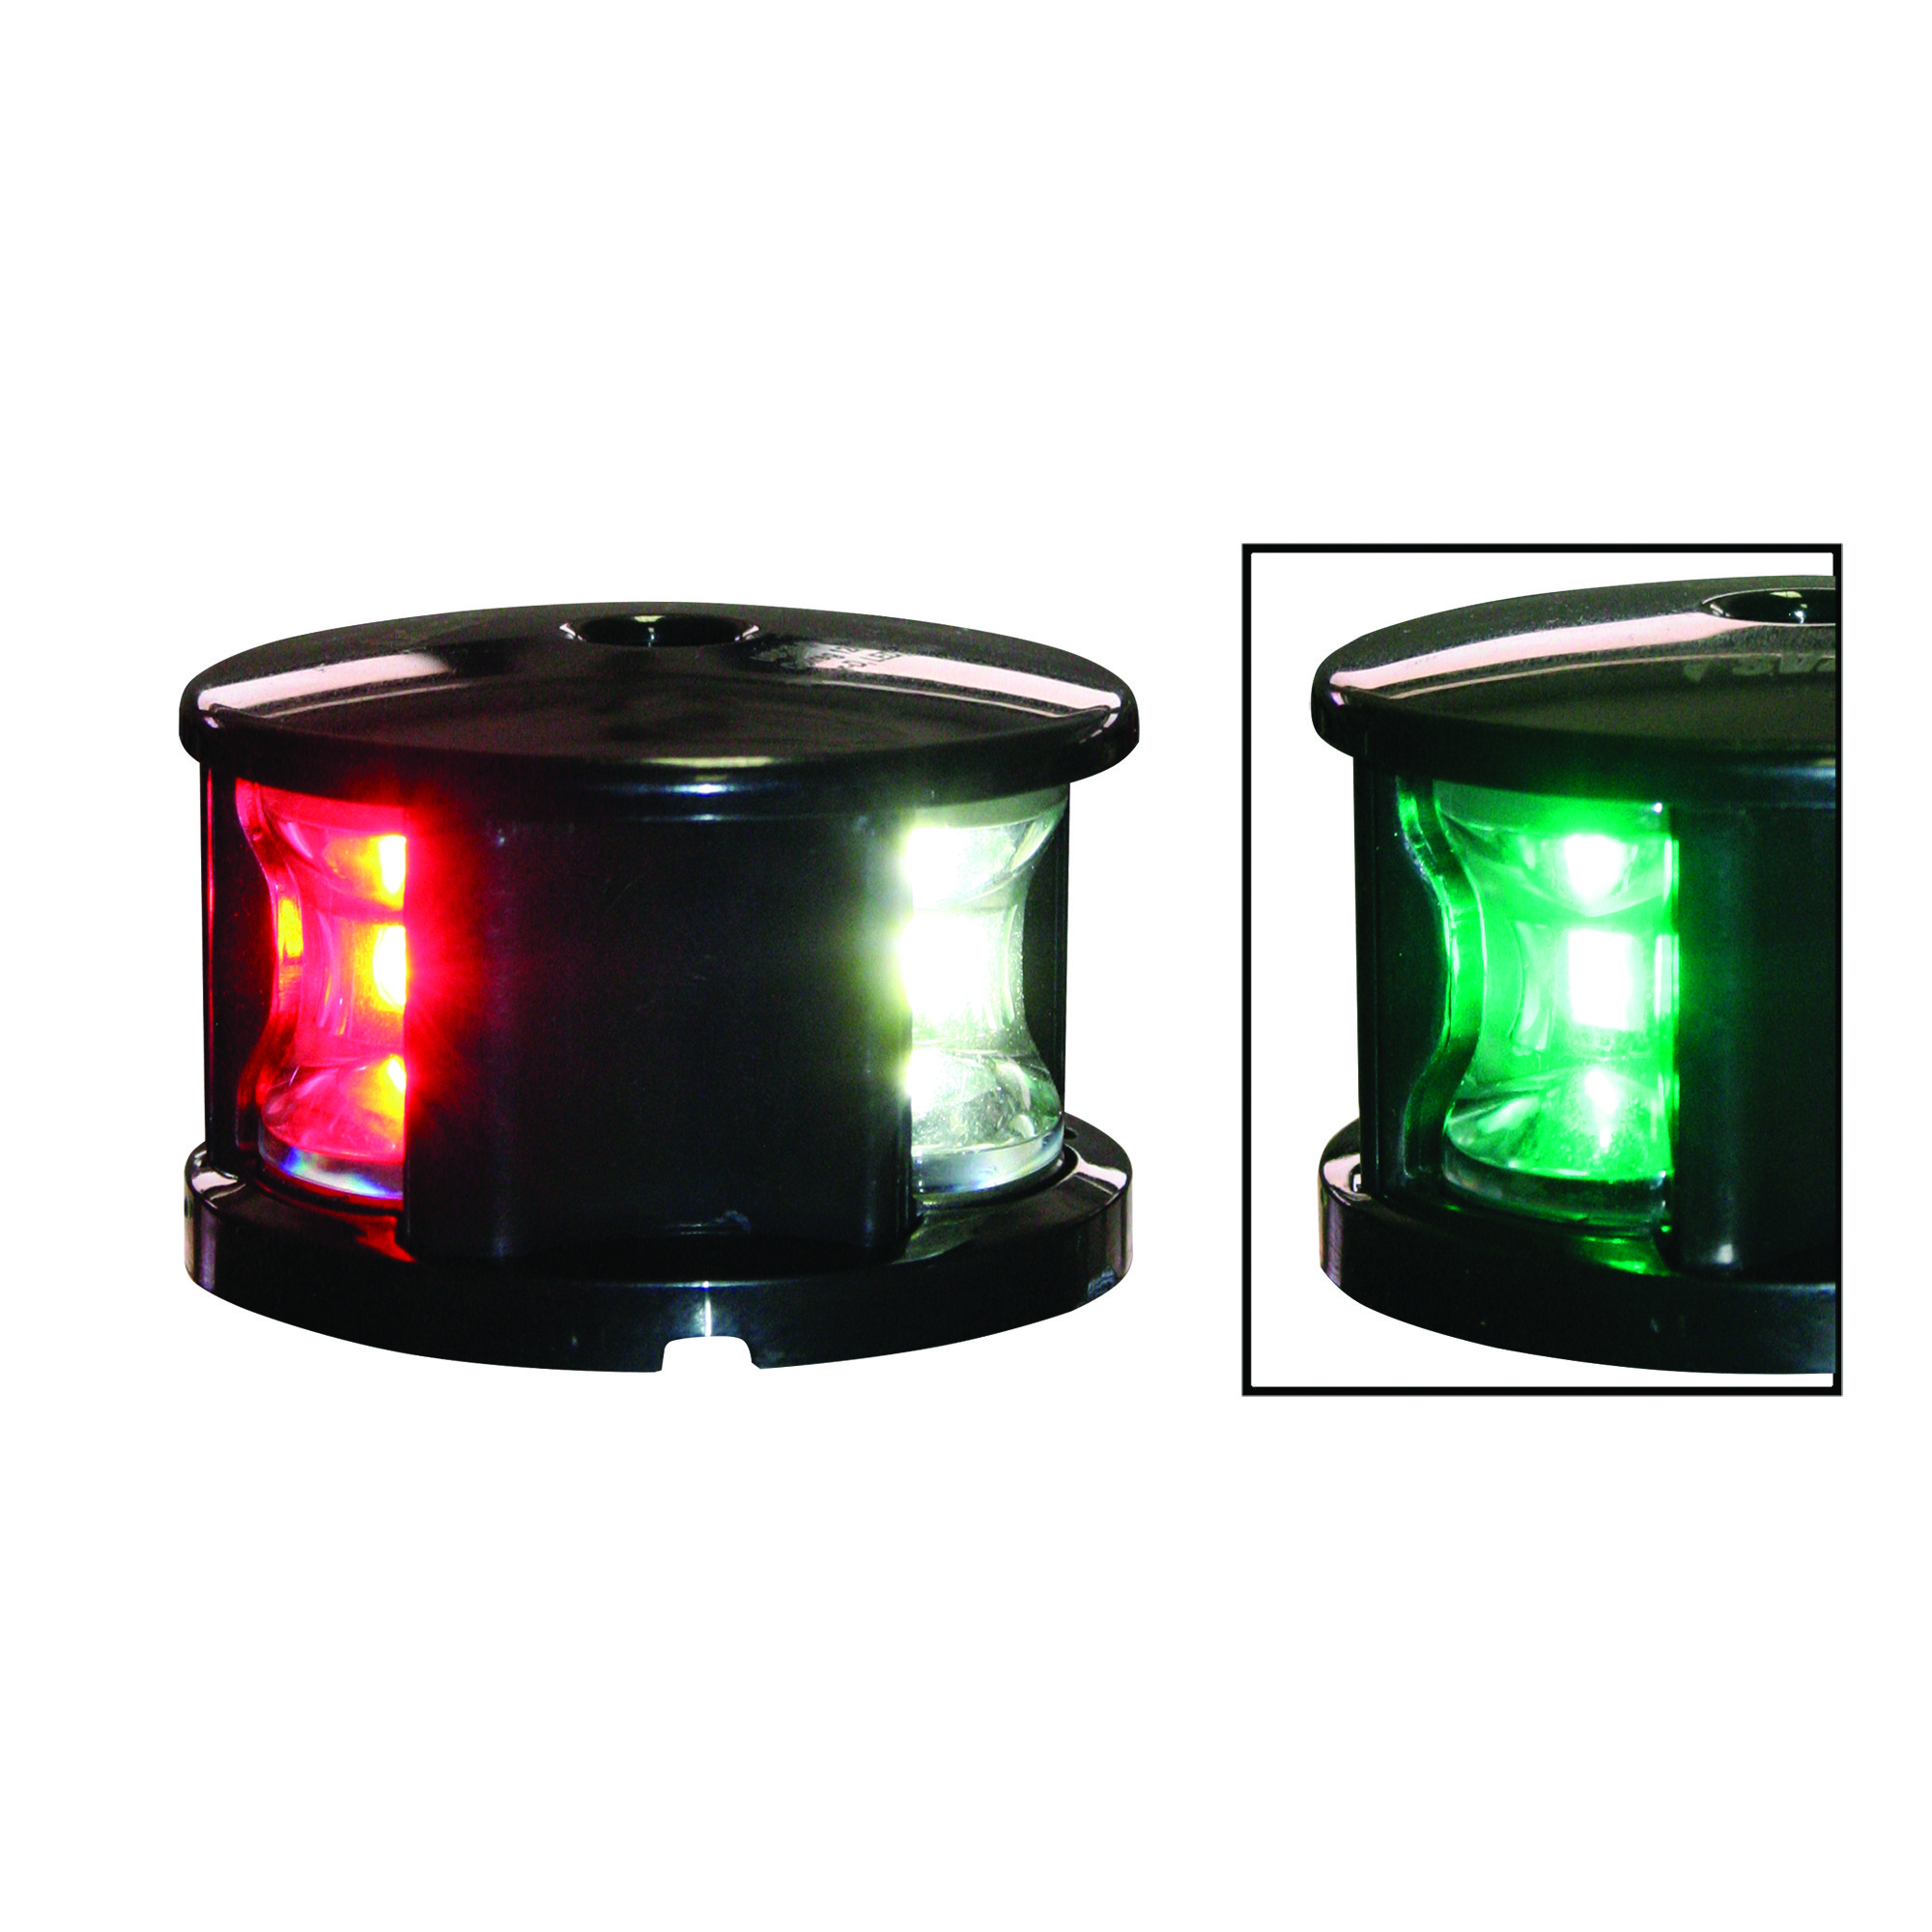 Комбинированный навигационный огонь Lalizas FOS LED 12 71309 светодиодный красный/зелёный/белый видимость 1+1+2 мили 12-15В 1,5Вт 360° для судов до 12 м чёрный корпус